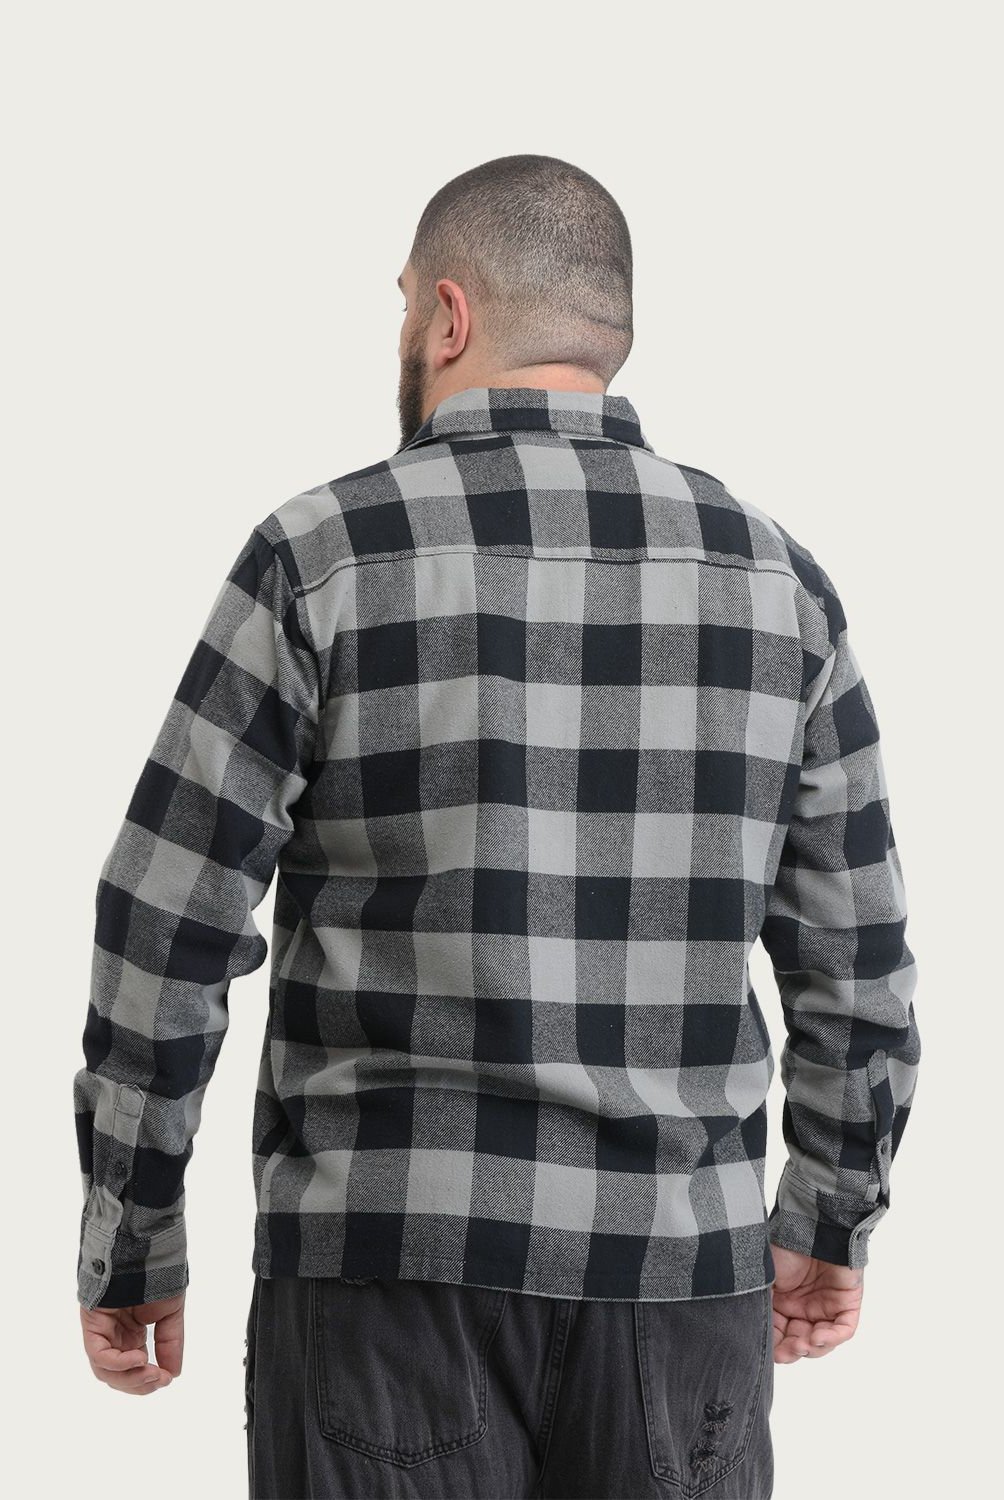 BEARCLIFF - Camisa casual para Hombre Regular Bearcliff